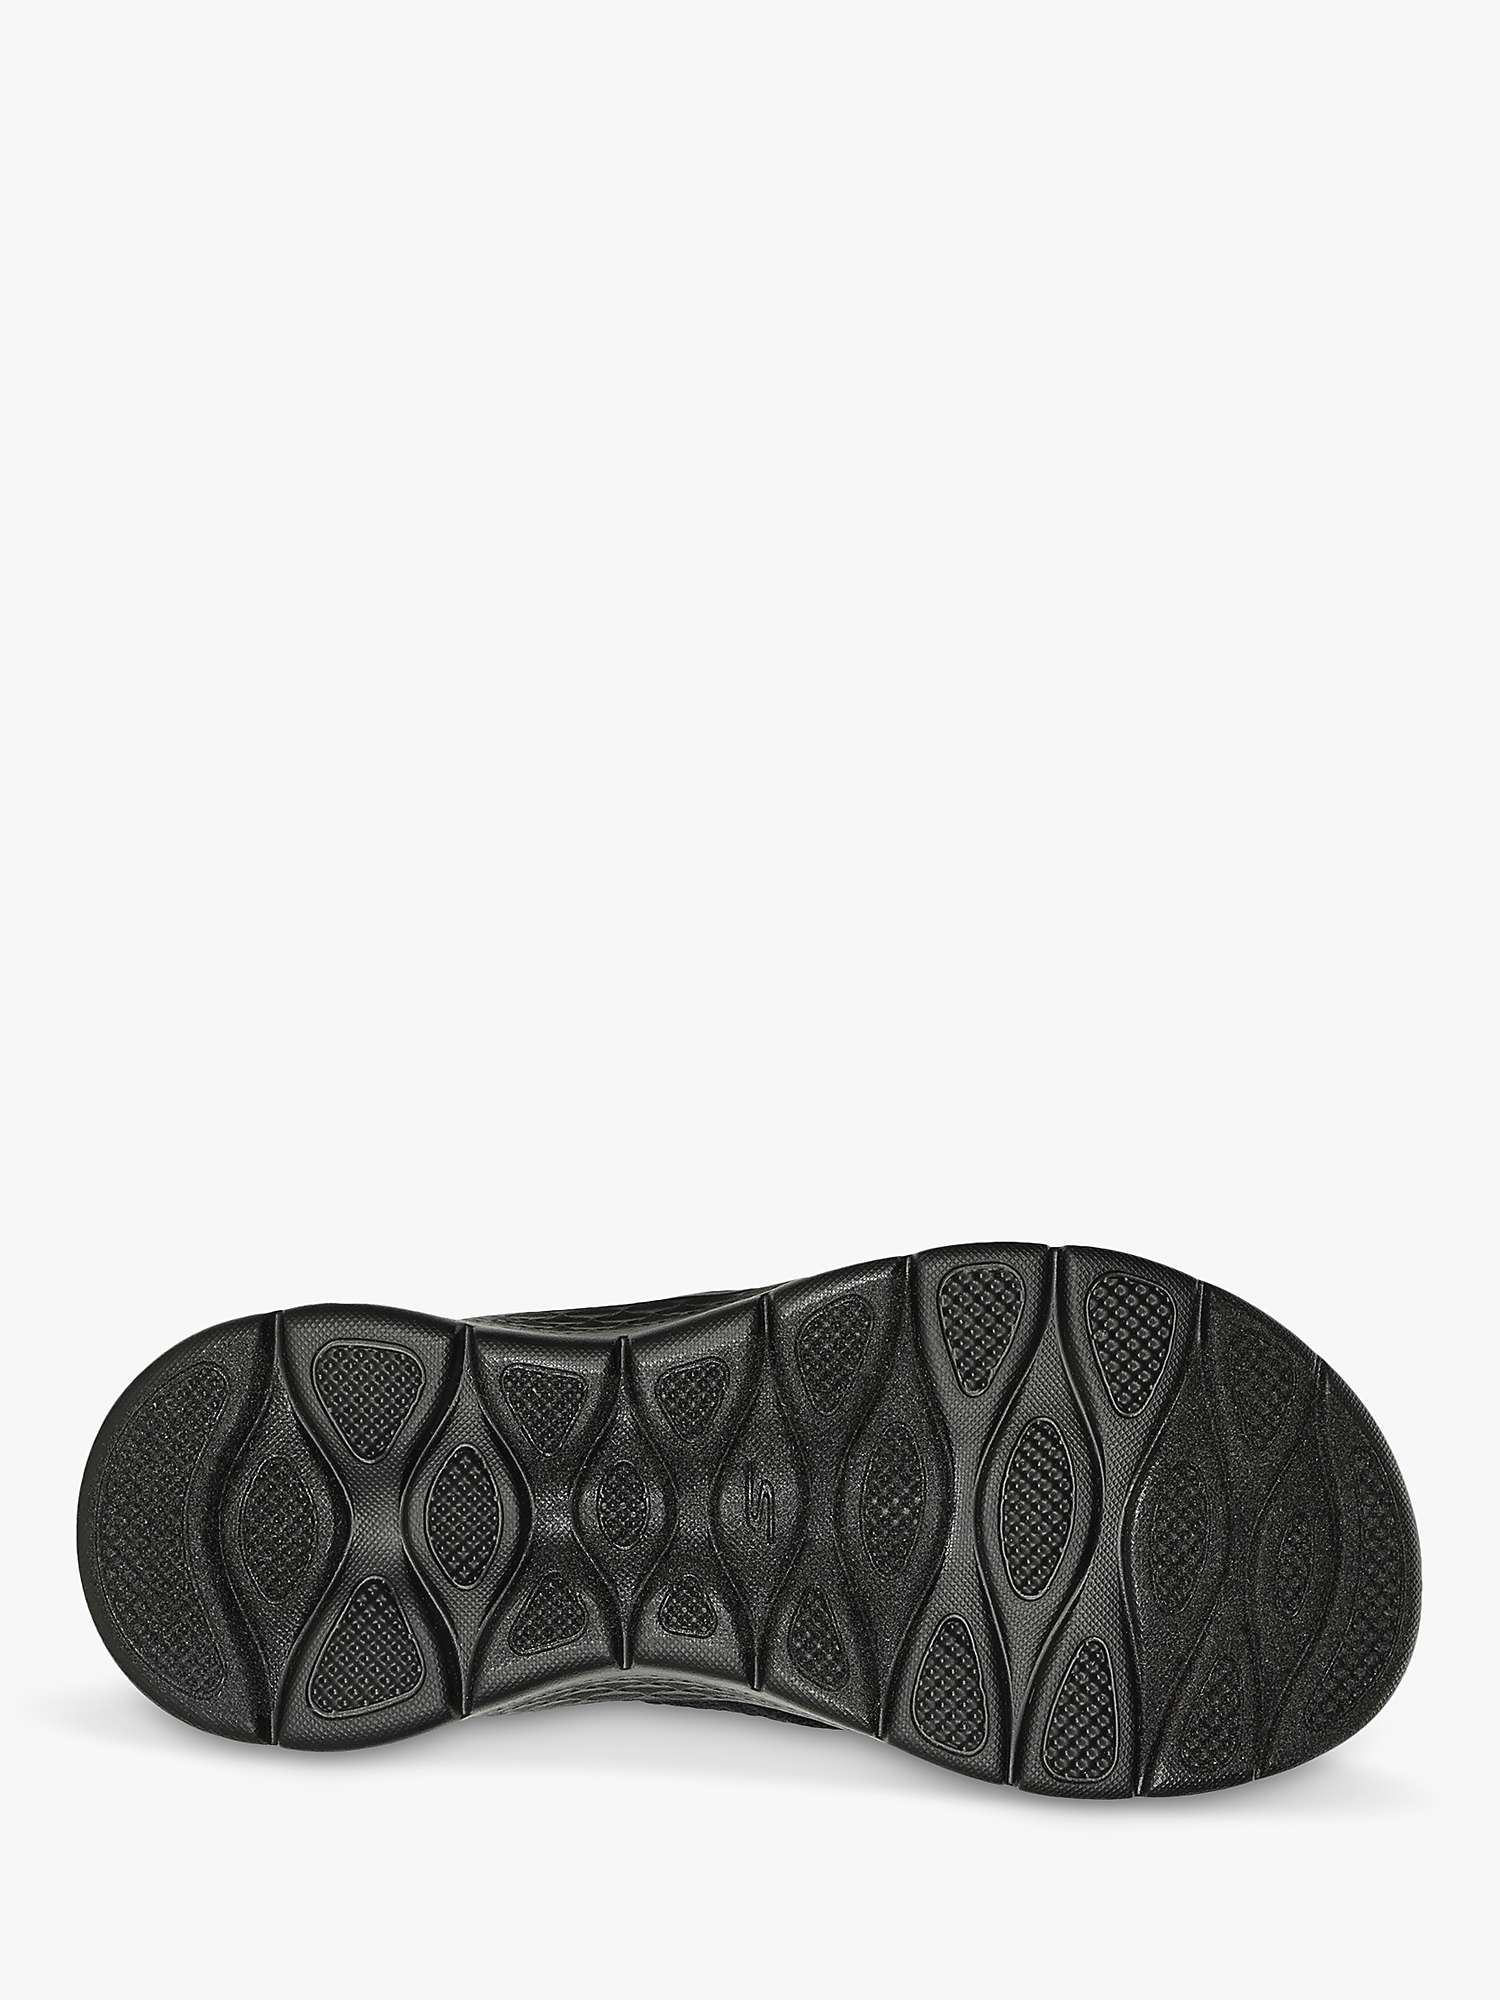 Buy Skechers GO WALK Flex Splendour Sandal, Black Online at johnlewis.com